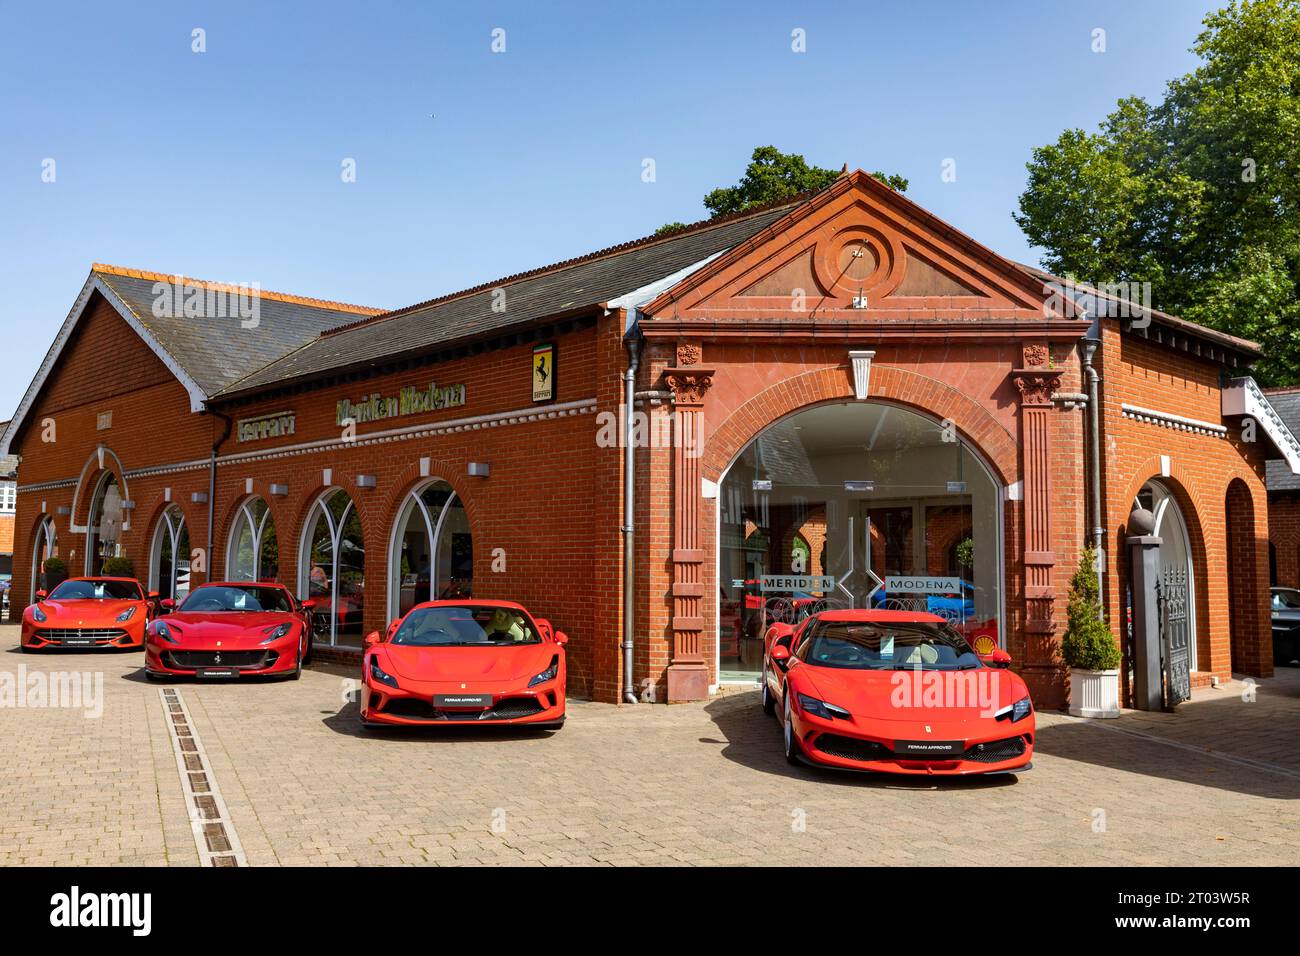 Concessionaria di auto sportive Ferrari, Meridien Modena a Lyndhurst, Hampshire, con Ferrari rosse sul piazzale, Inghilterra, Regno Unito Foto Stock